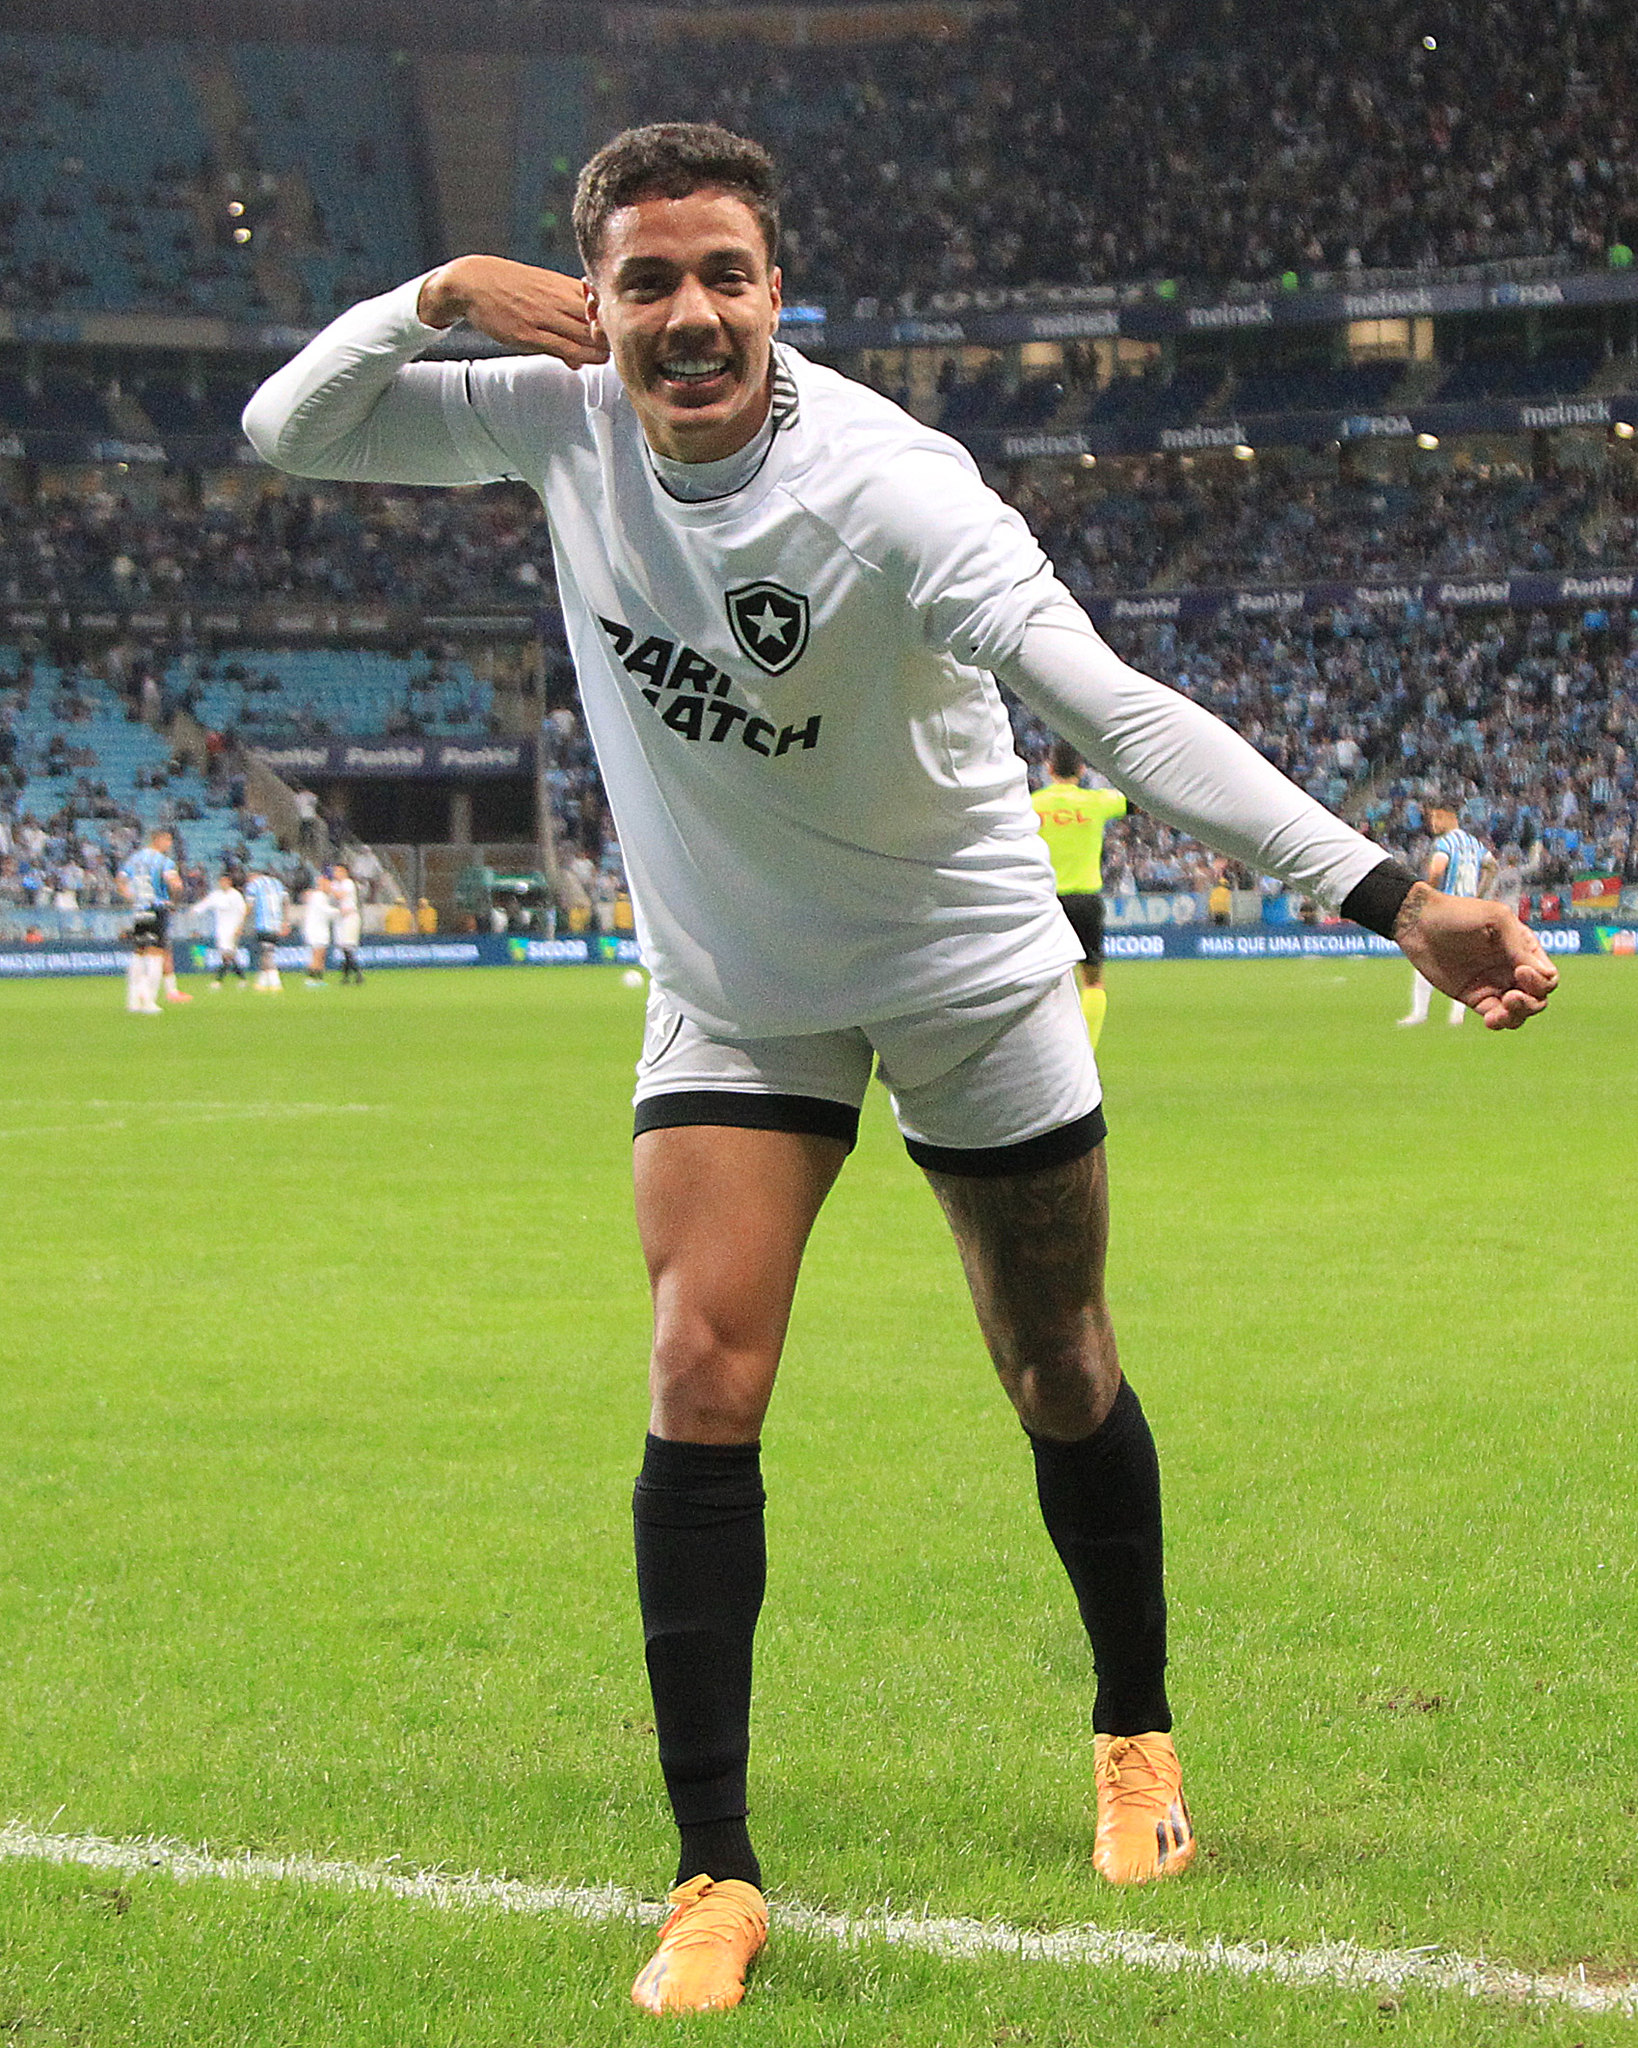 Carlos Alberto comemorando o segundo gol do Botafogo contra o grêmio.Foto: Vitor Silva/Botafogo.